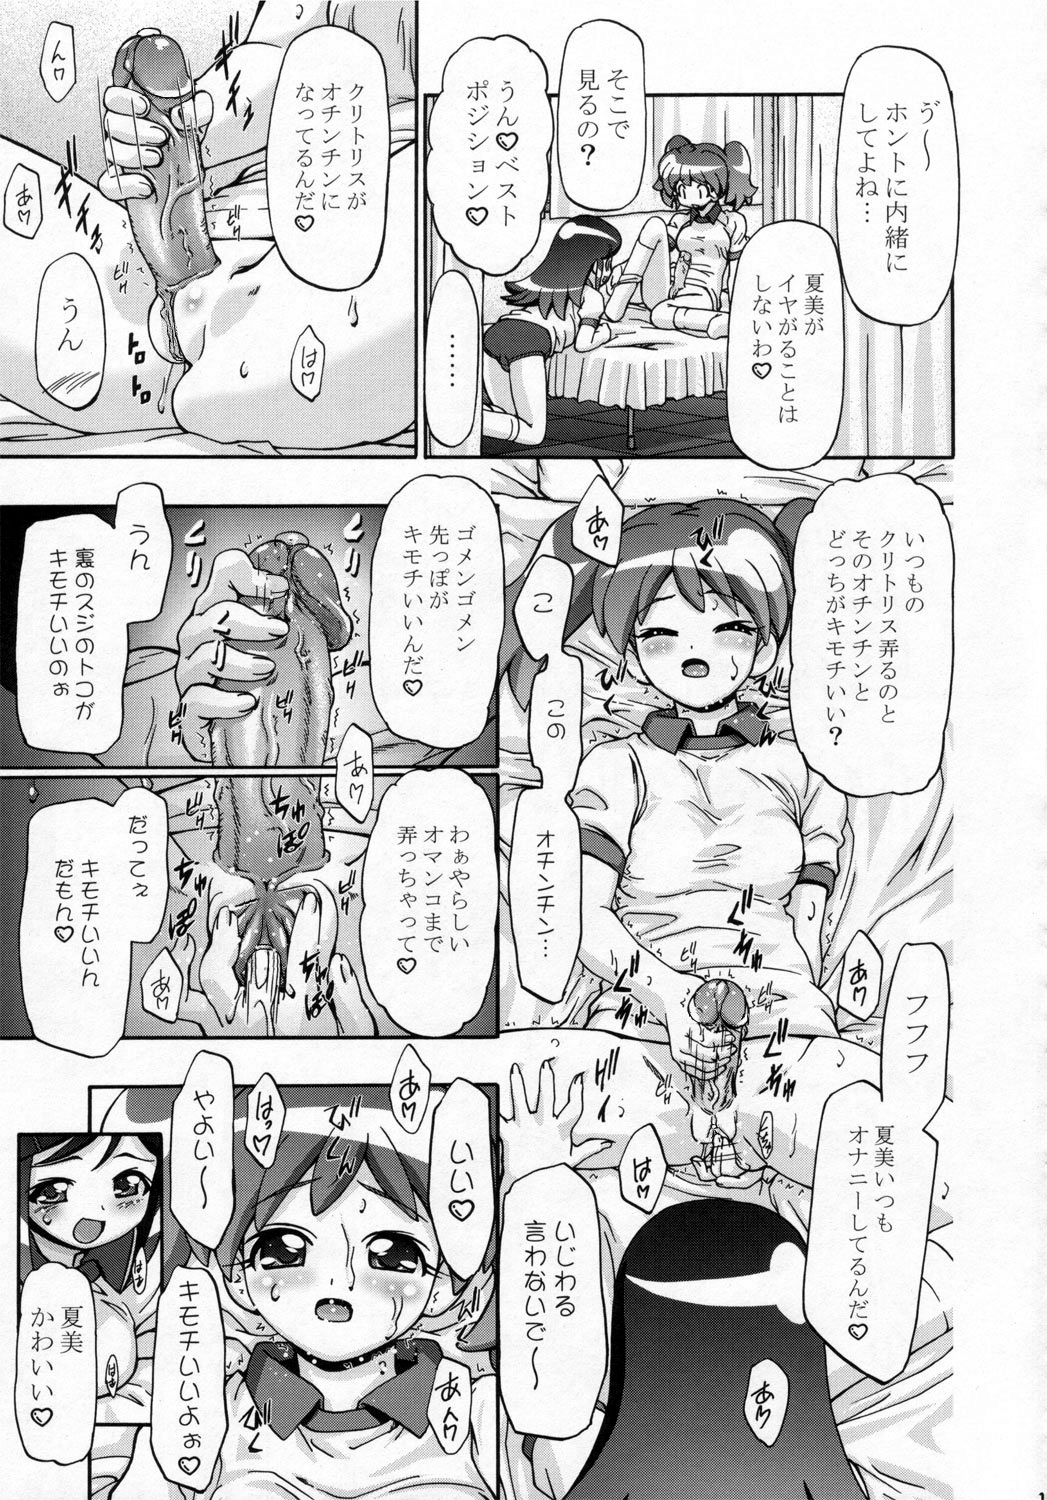 (SC31) [Gambler Club (Kousaka Jun)] Natsu Yuki - Summer Snow (Keroro Gunsou) page 18 full